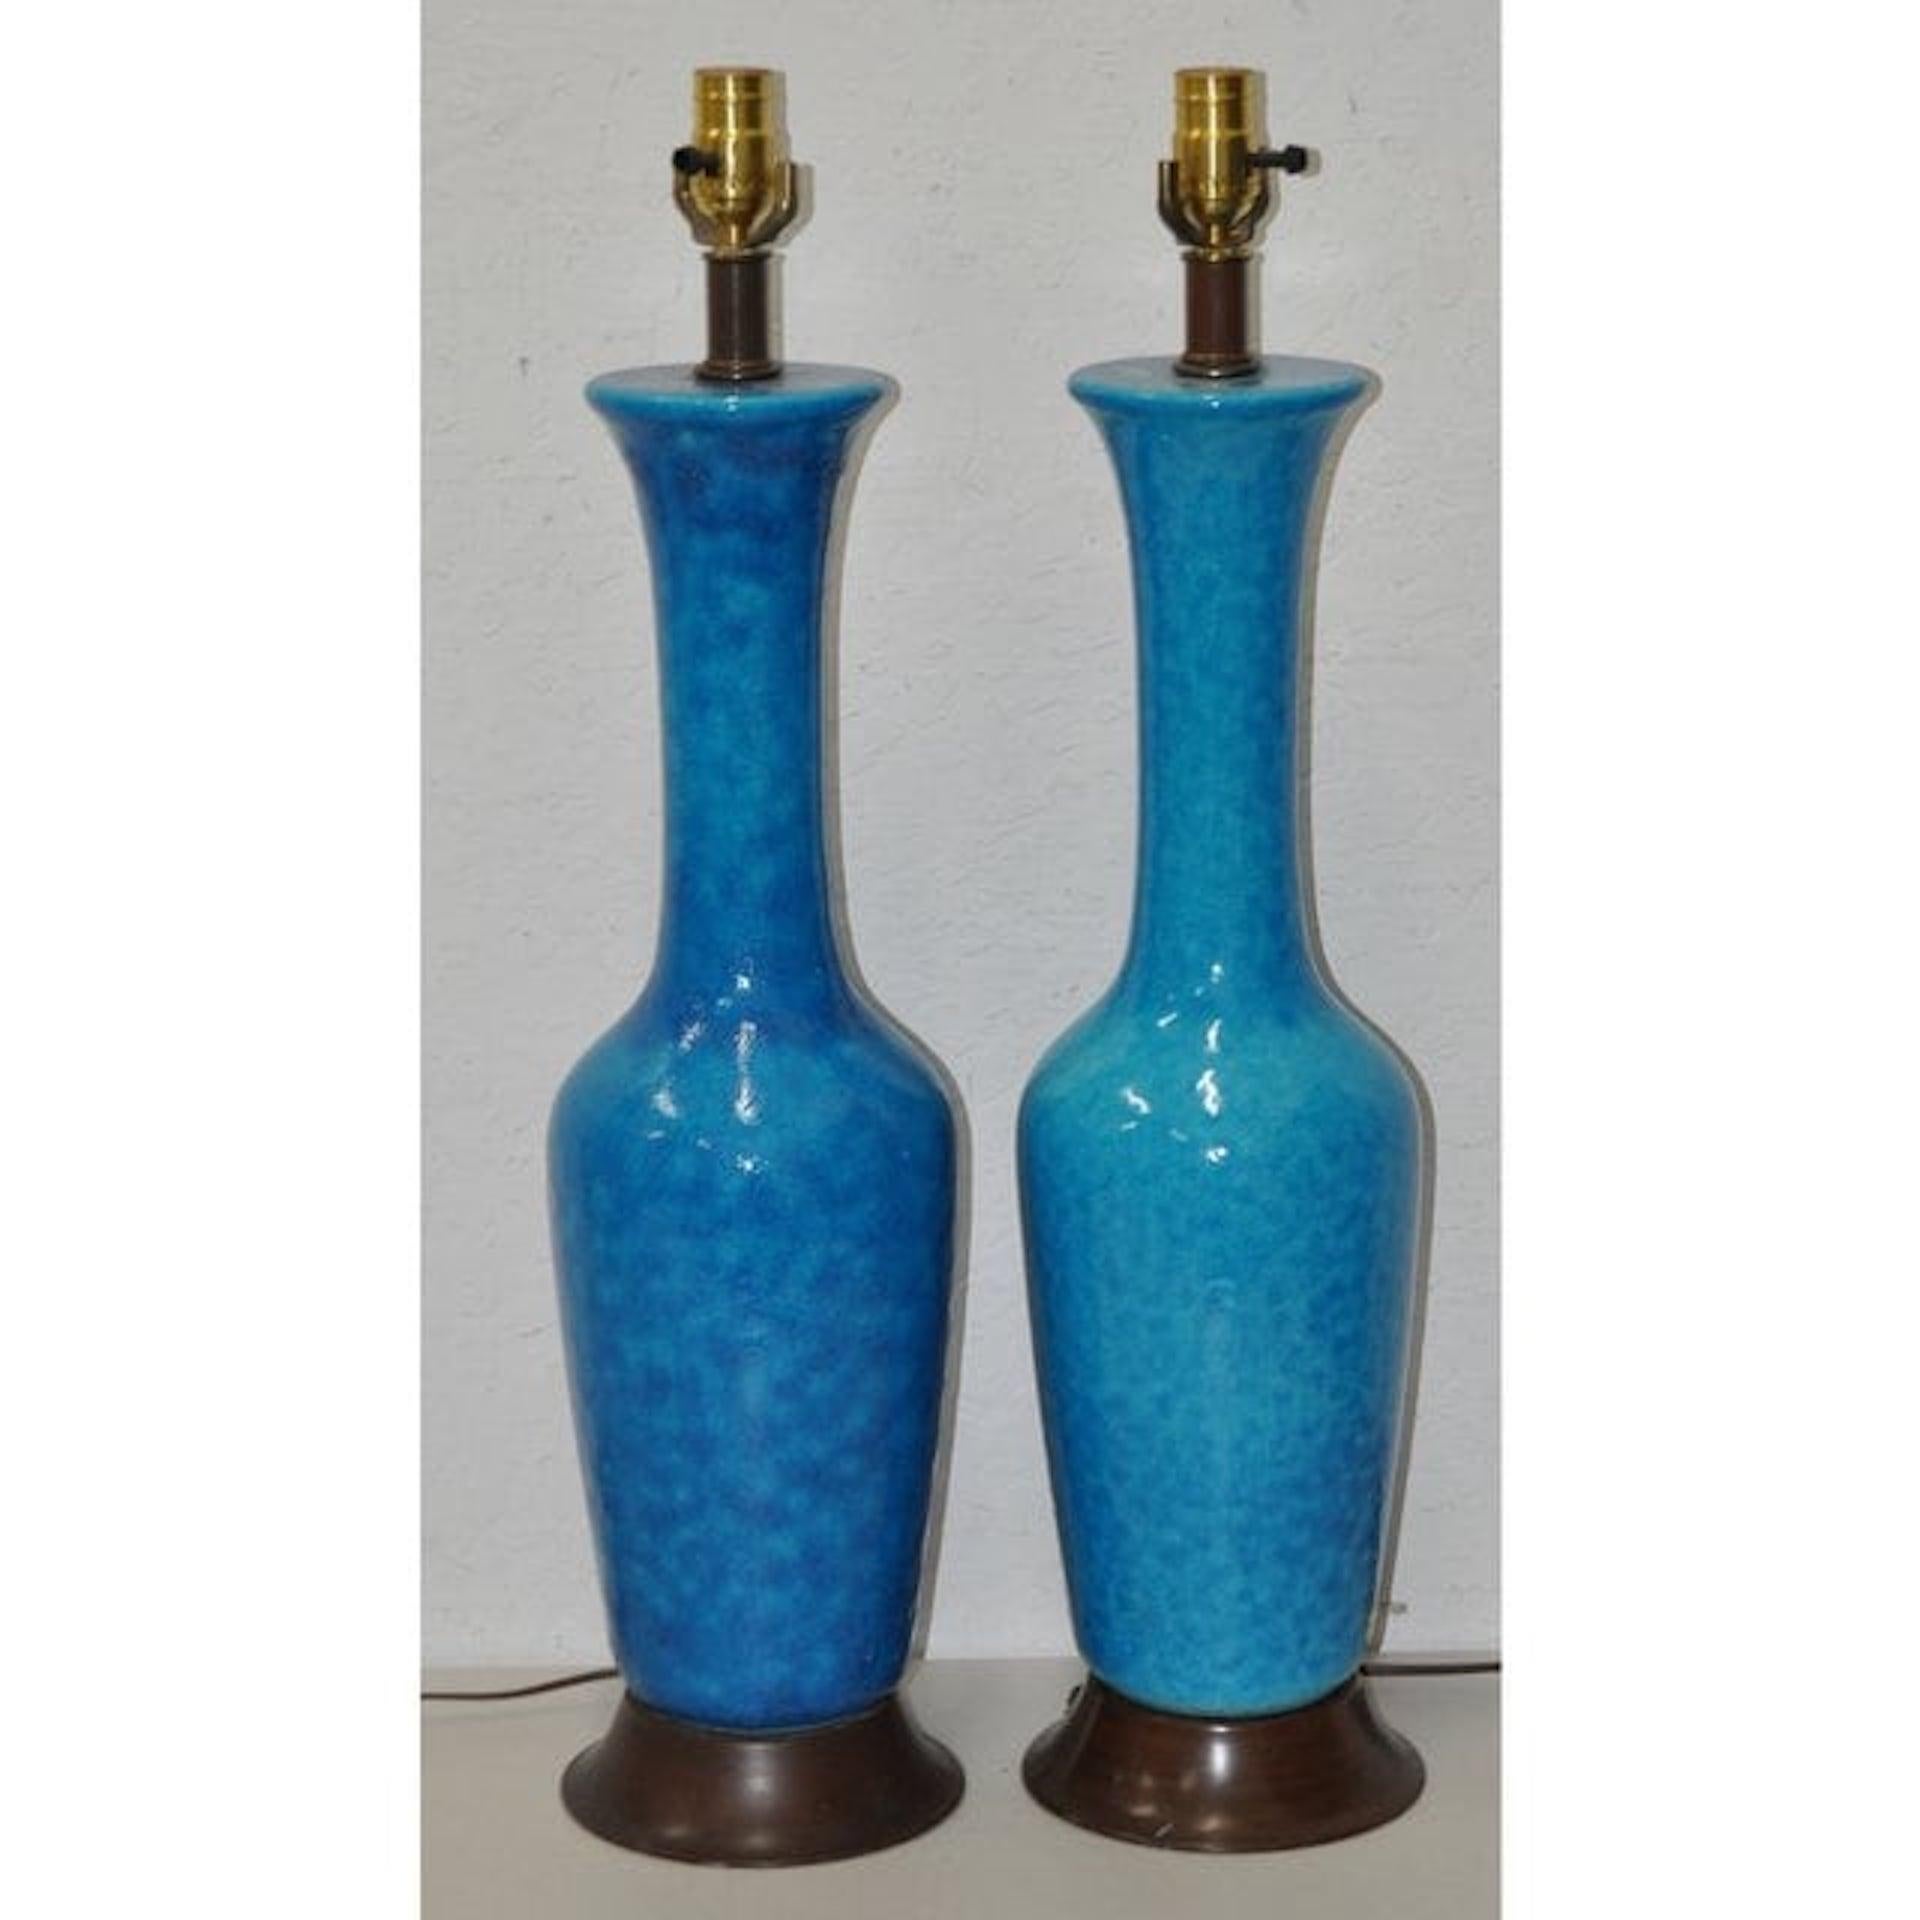 Paar Tischlampen aus glasierter Keramik von Phil Mar, um 1950

Beeindruckendes Paar blauer Tischlampen mit Craqueléglasur von Phil Mar Corp. Cleveland, OH.

Maße: 6 3/4